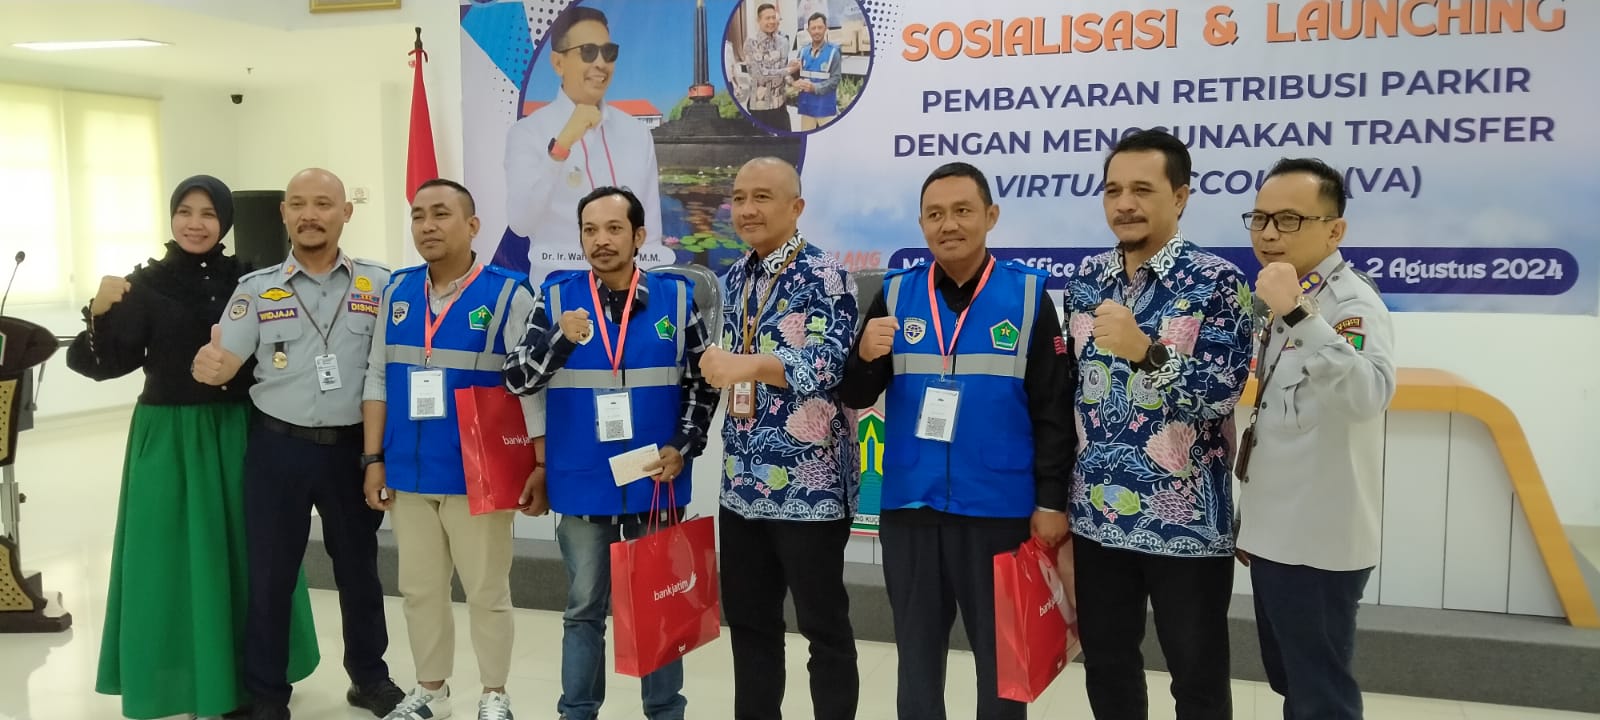 Maksimalkan Pendapatan, Dishub Kota Malang Launching Setoran Virtual Account